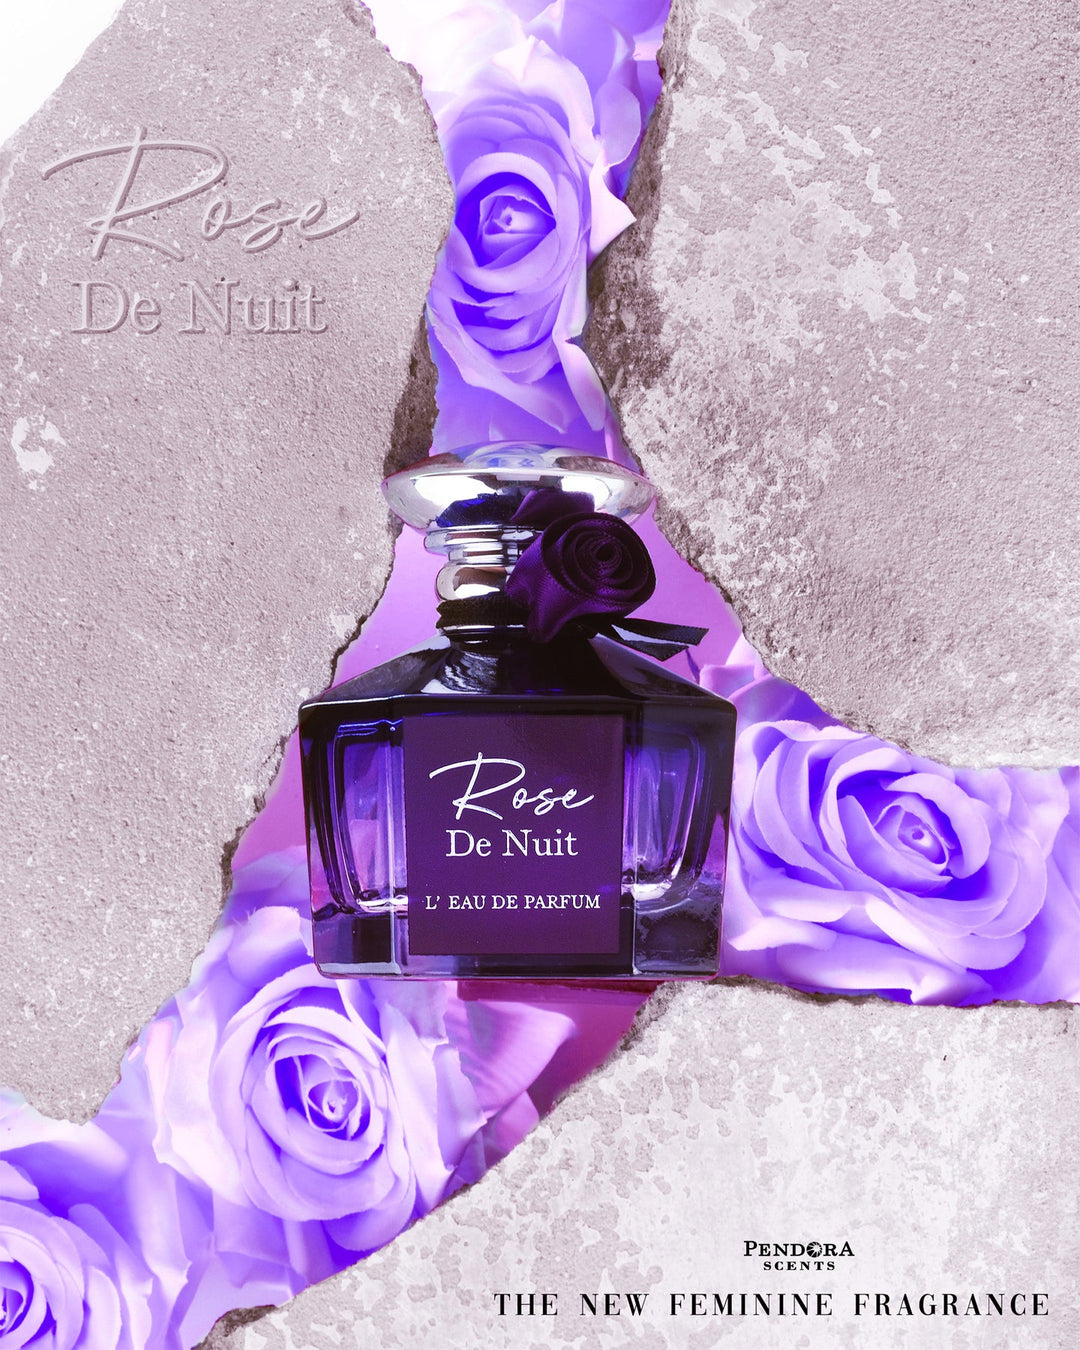 Rose de nuit - Perfume Parlour